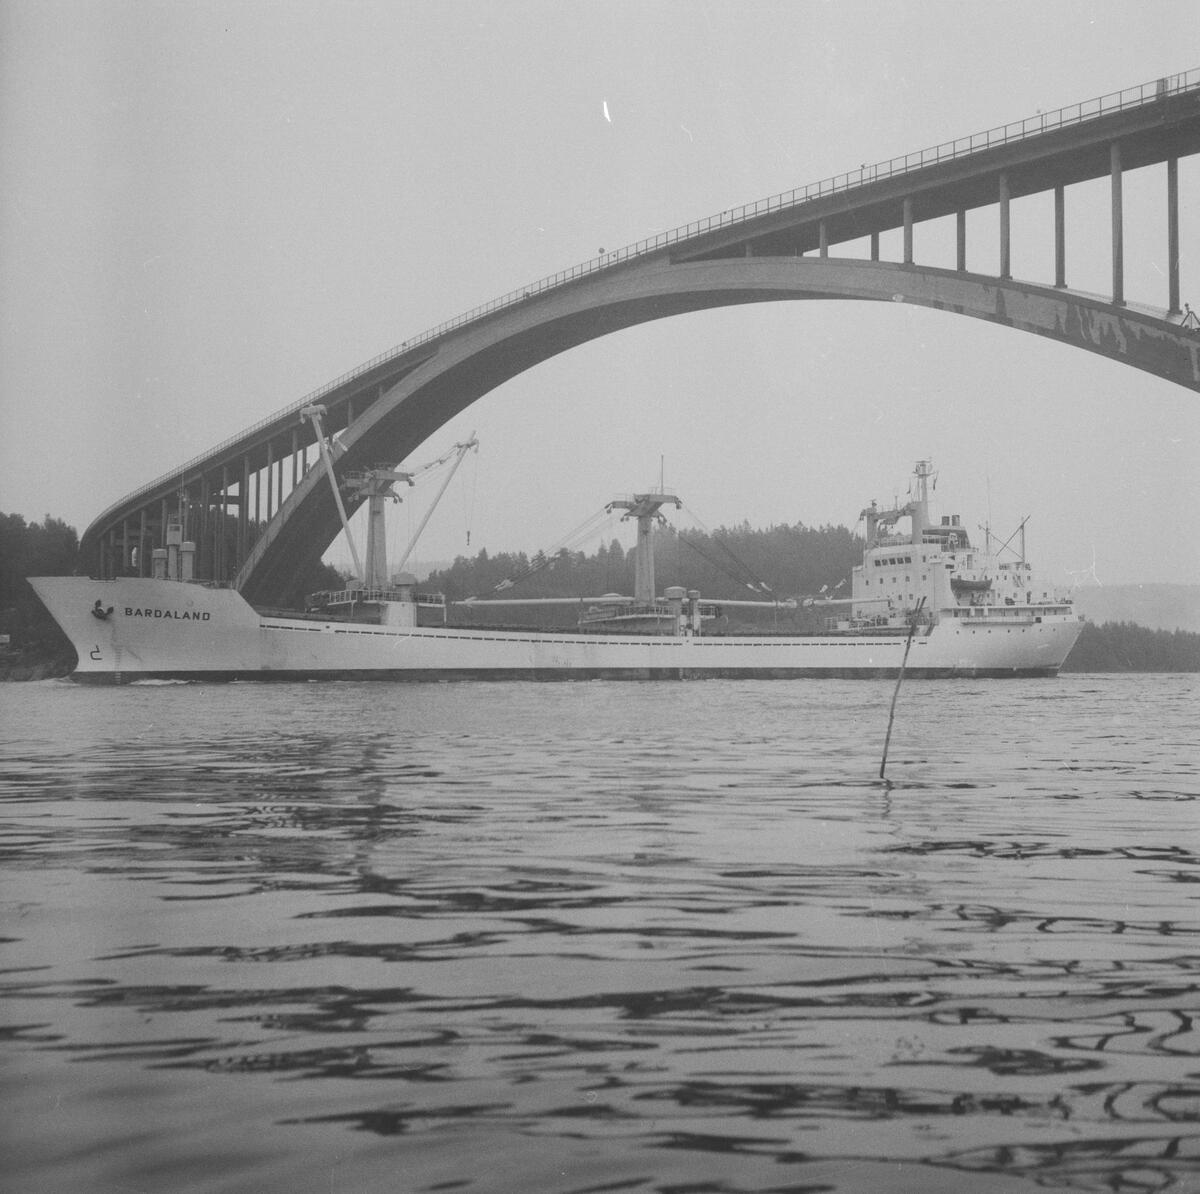 Fartyget Bardaland vid Sandöbron
